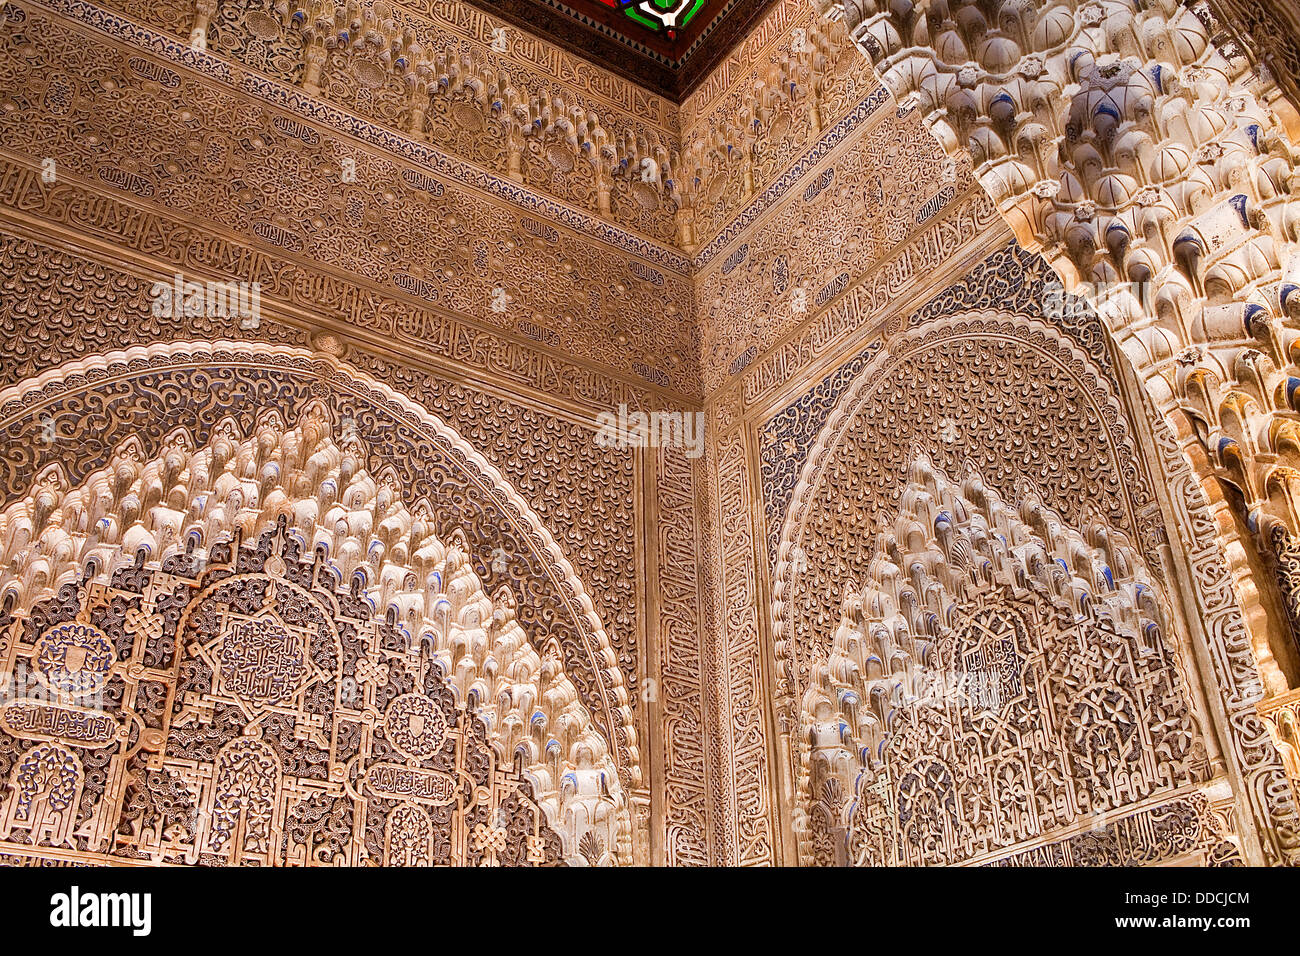 Detalle del mirador de Daraxa, en Ajimeces hall, el Palacio de los leones, palacios Nazaries, Alhambra, Granada, Andalucía, España Foto de stock